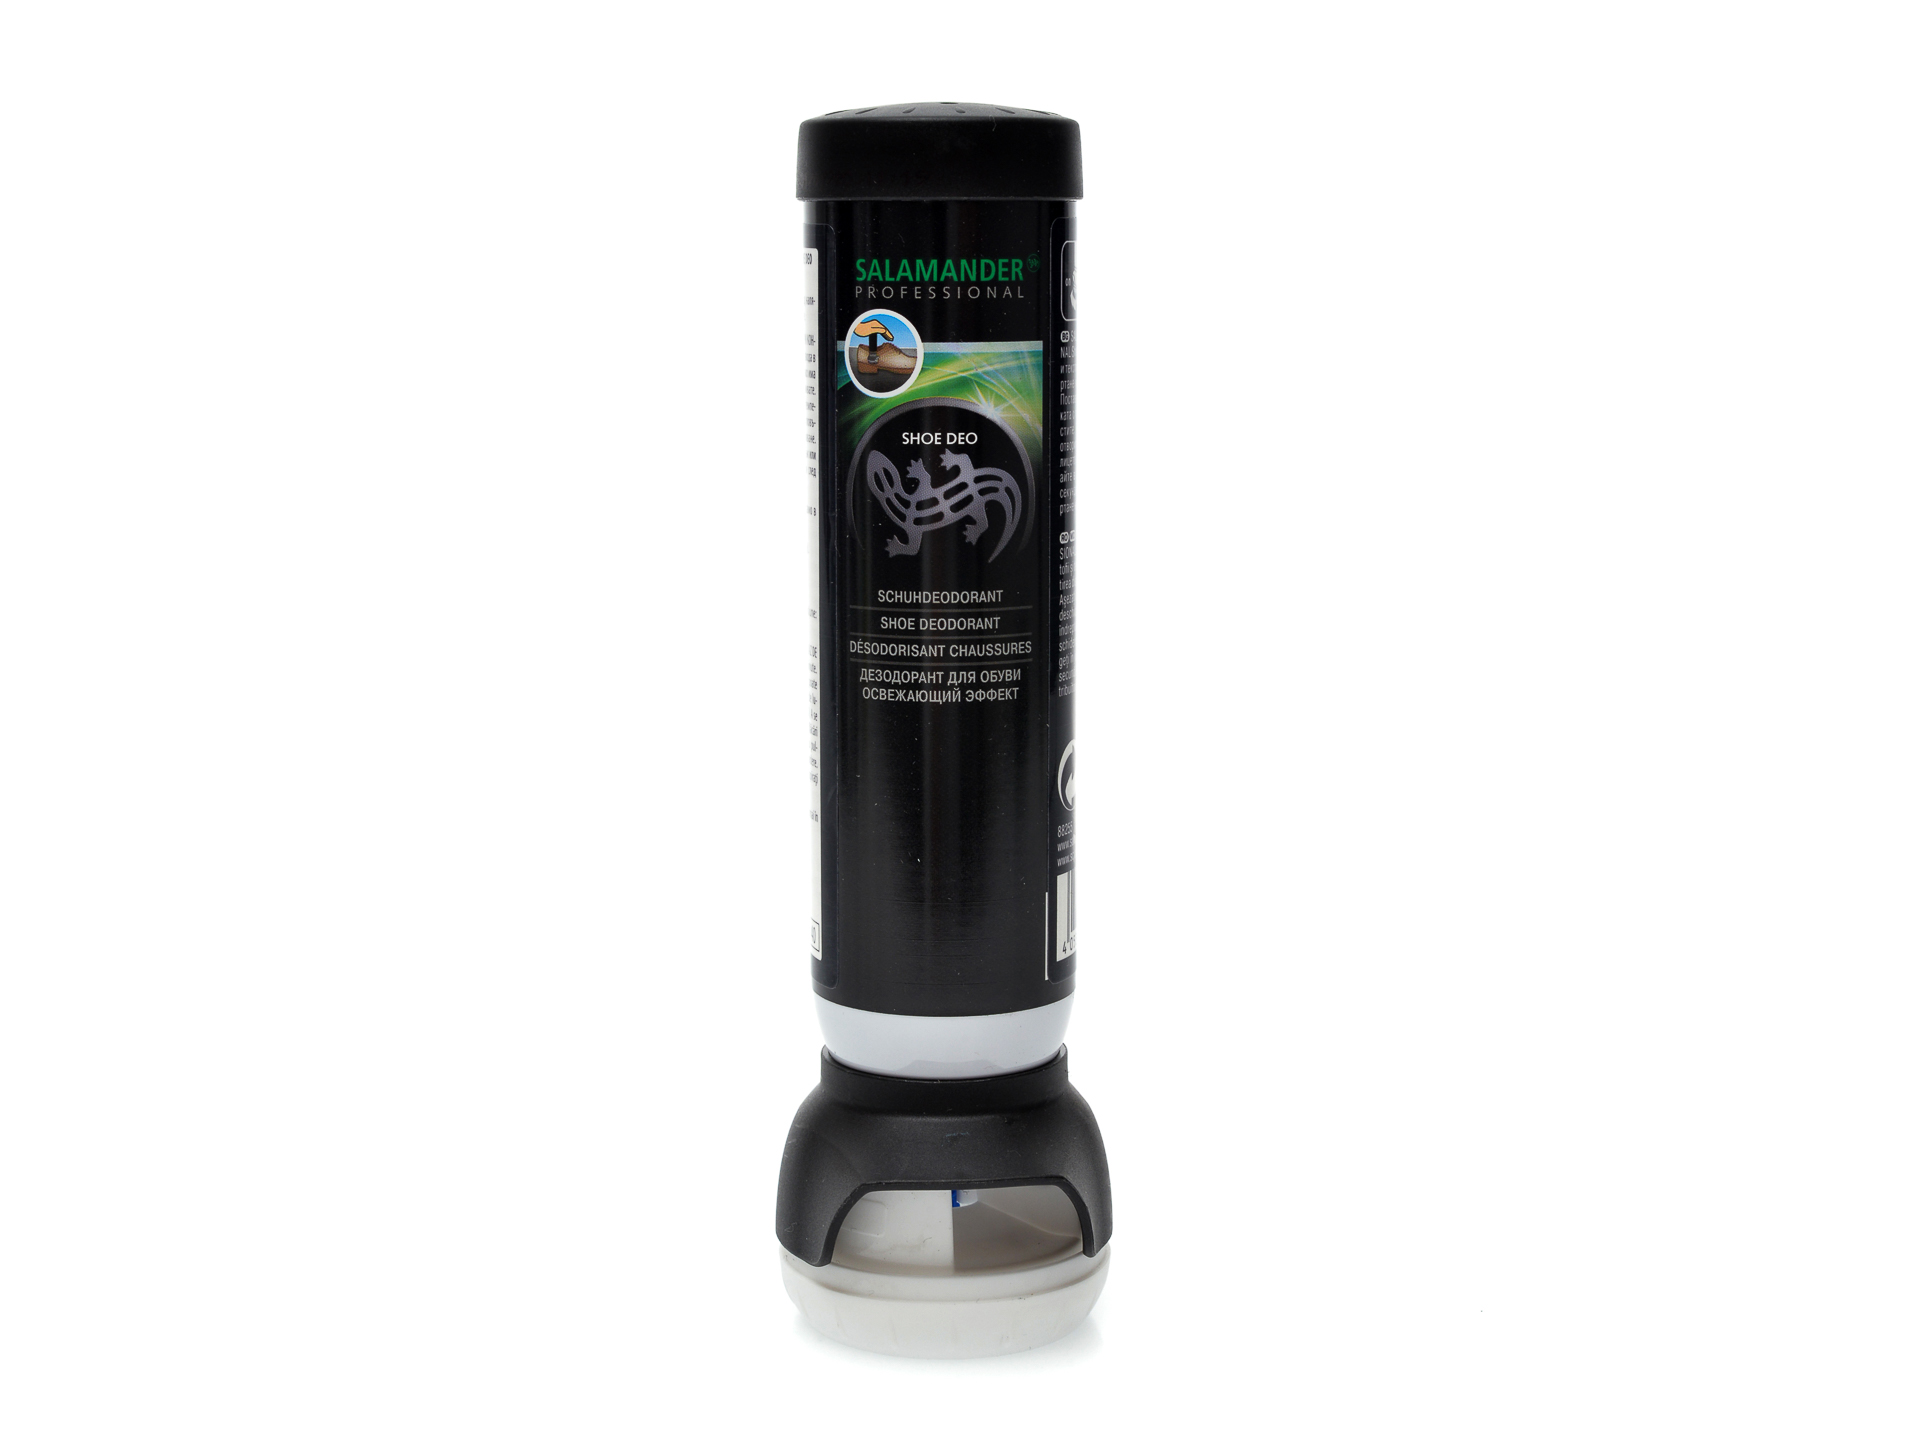 PR Deodorant pentru mentinerea prospetimii in incaltaminte, Salamander imagine reduceri black friday 2021 otter.ro